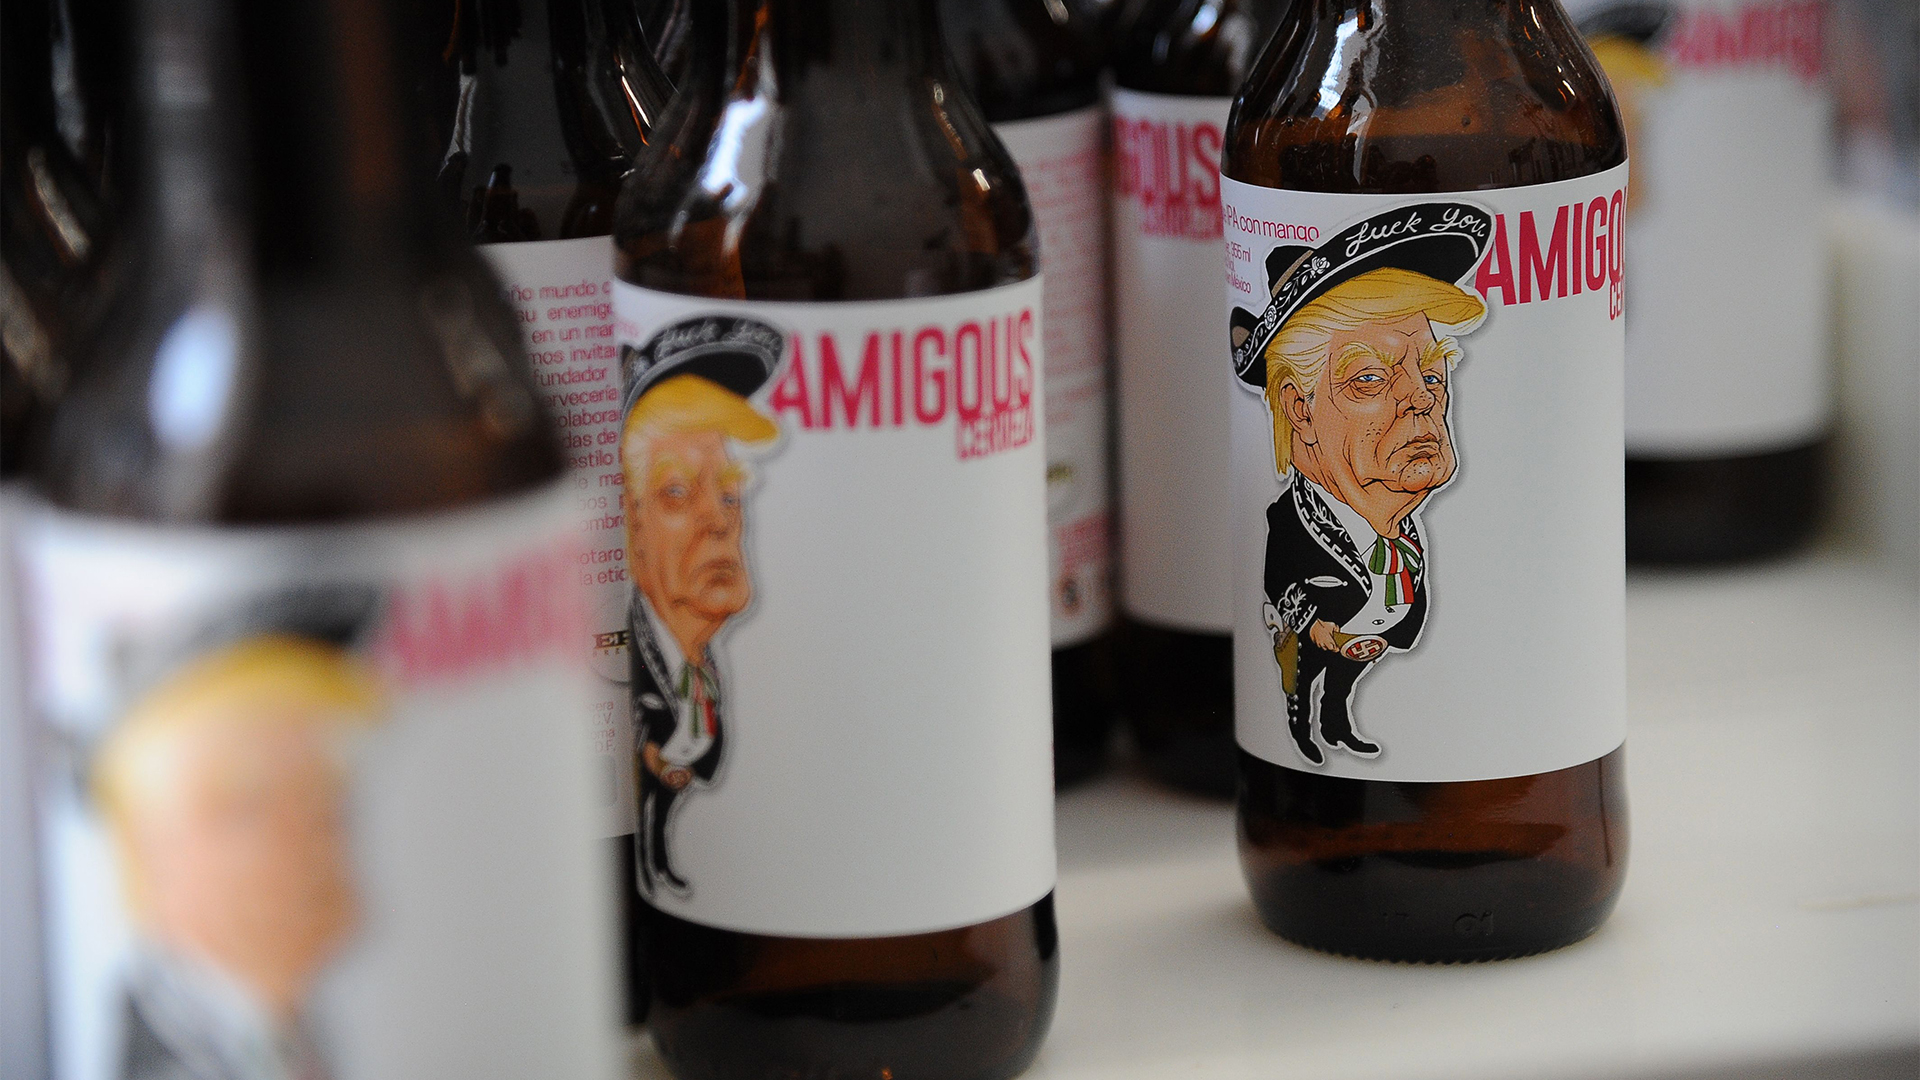 Bier mit dem Konterfei von Trump auf dem Etikett | AFP